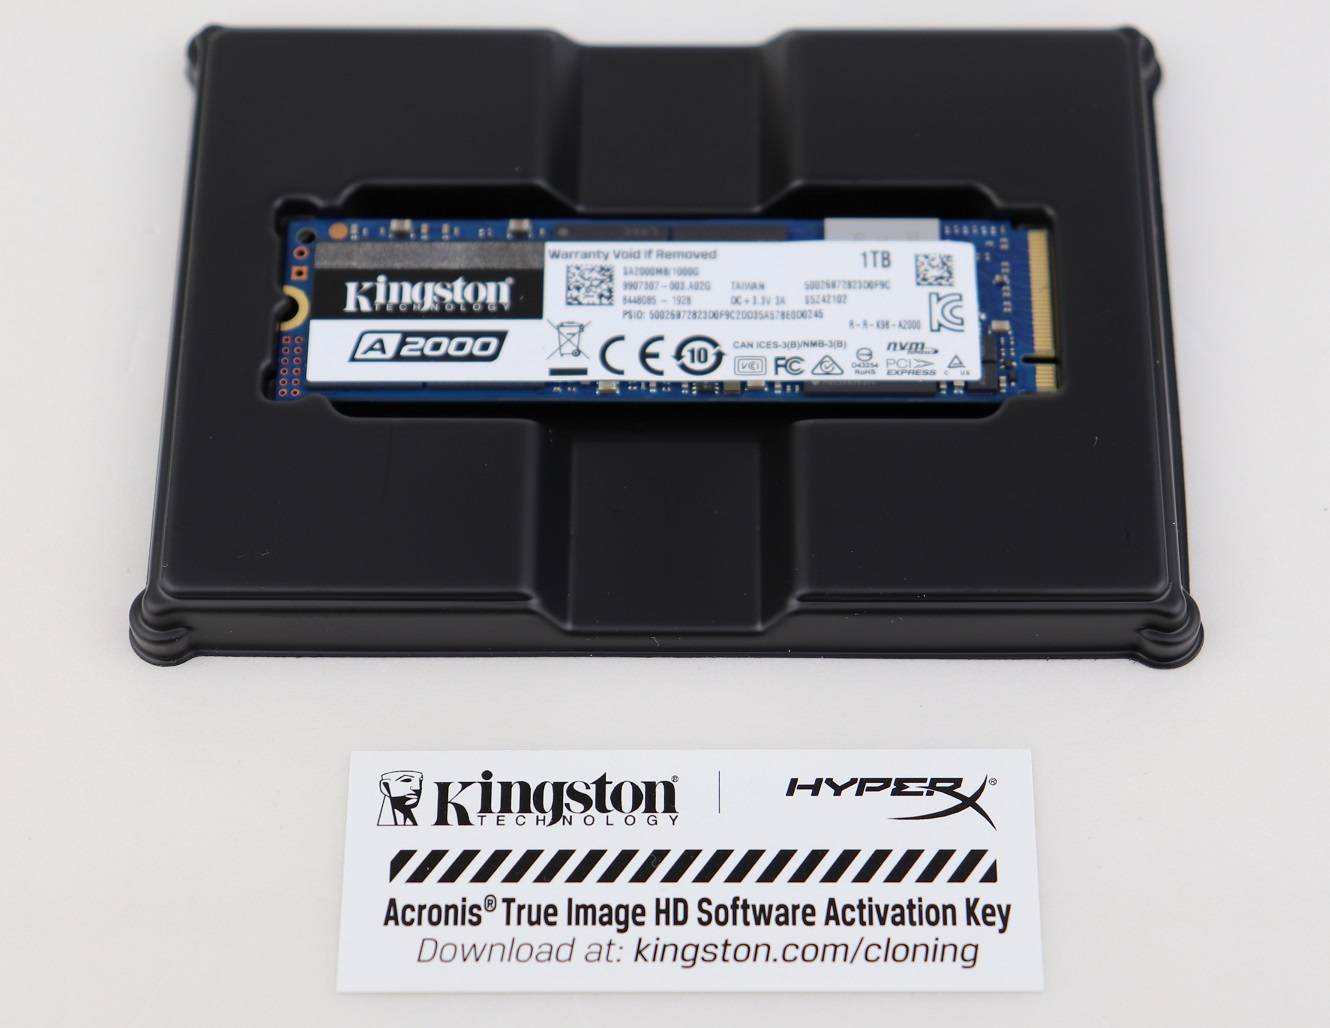 Kingston A2000 PCIe NVMe SSD固態硬碟